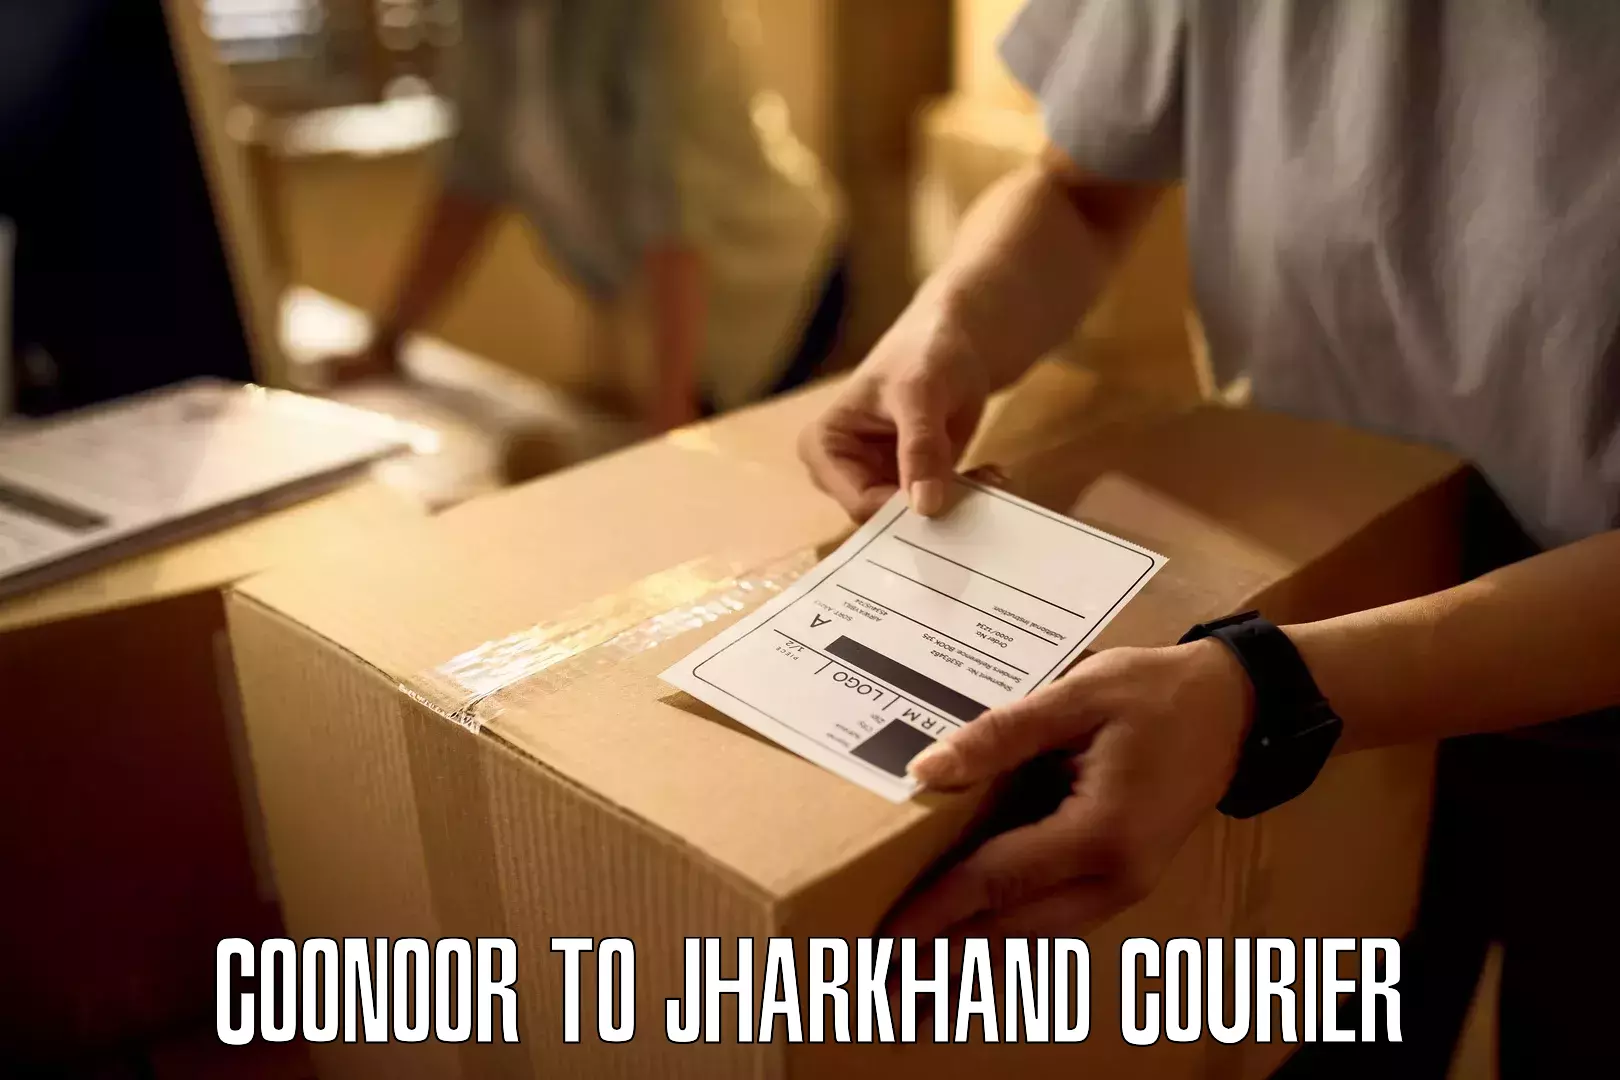 Cargo courier service Coonoor to IIT Dhanbad